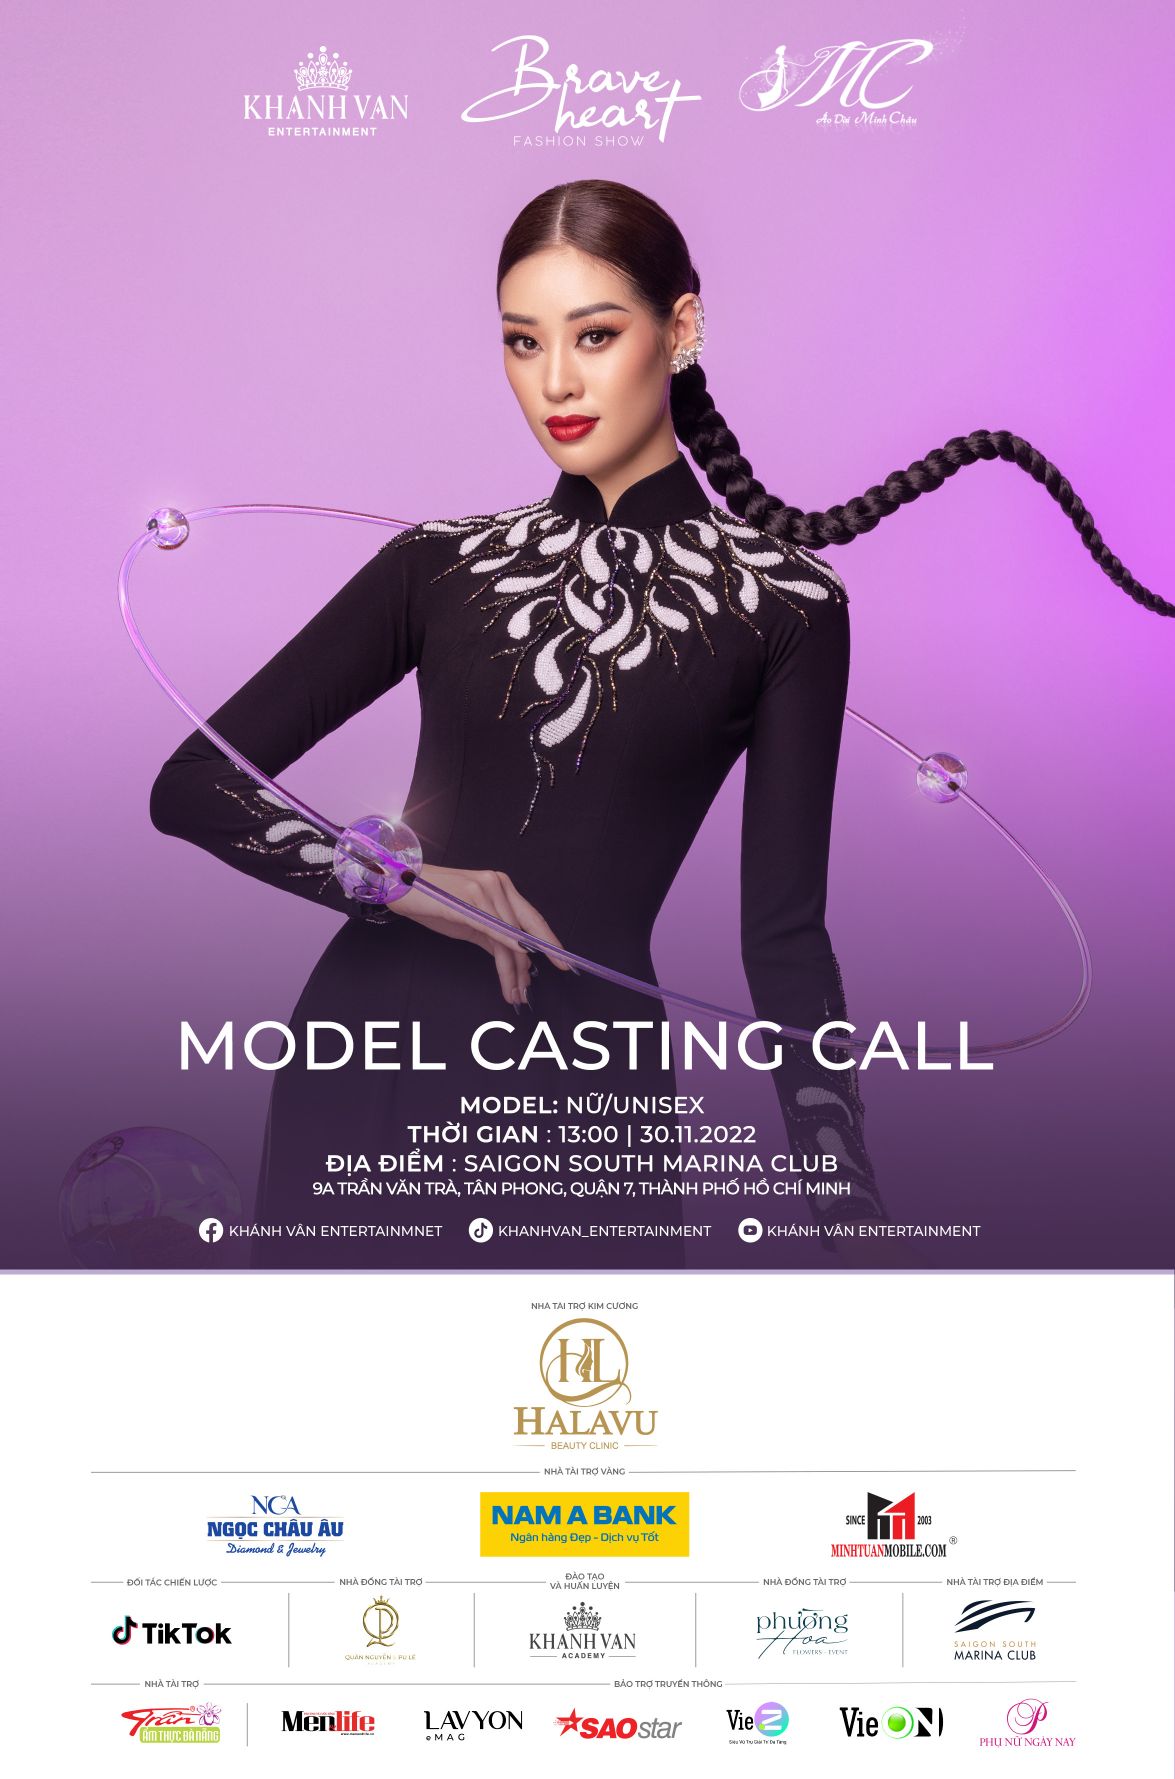 Casting Call NTK Dang Trong Minh Chau Khánh Vân tuyển chọn người mẫu trình diễn cho Brave Heart Fashion Show 2022